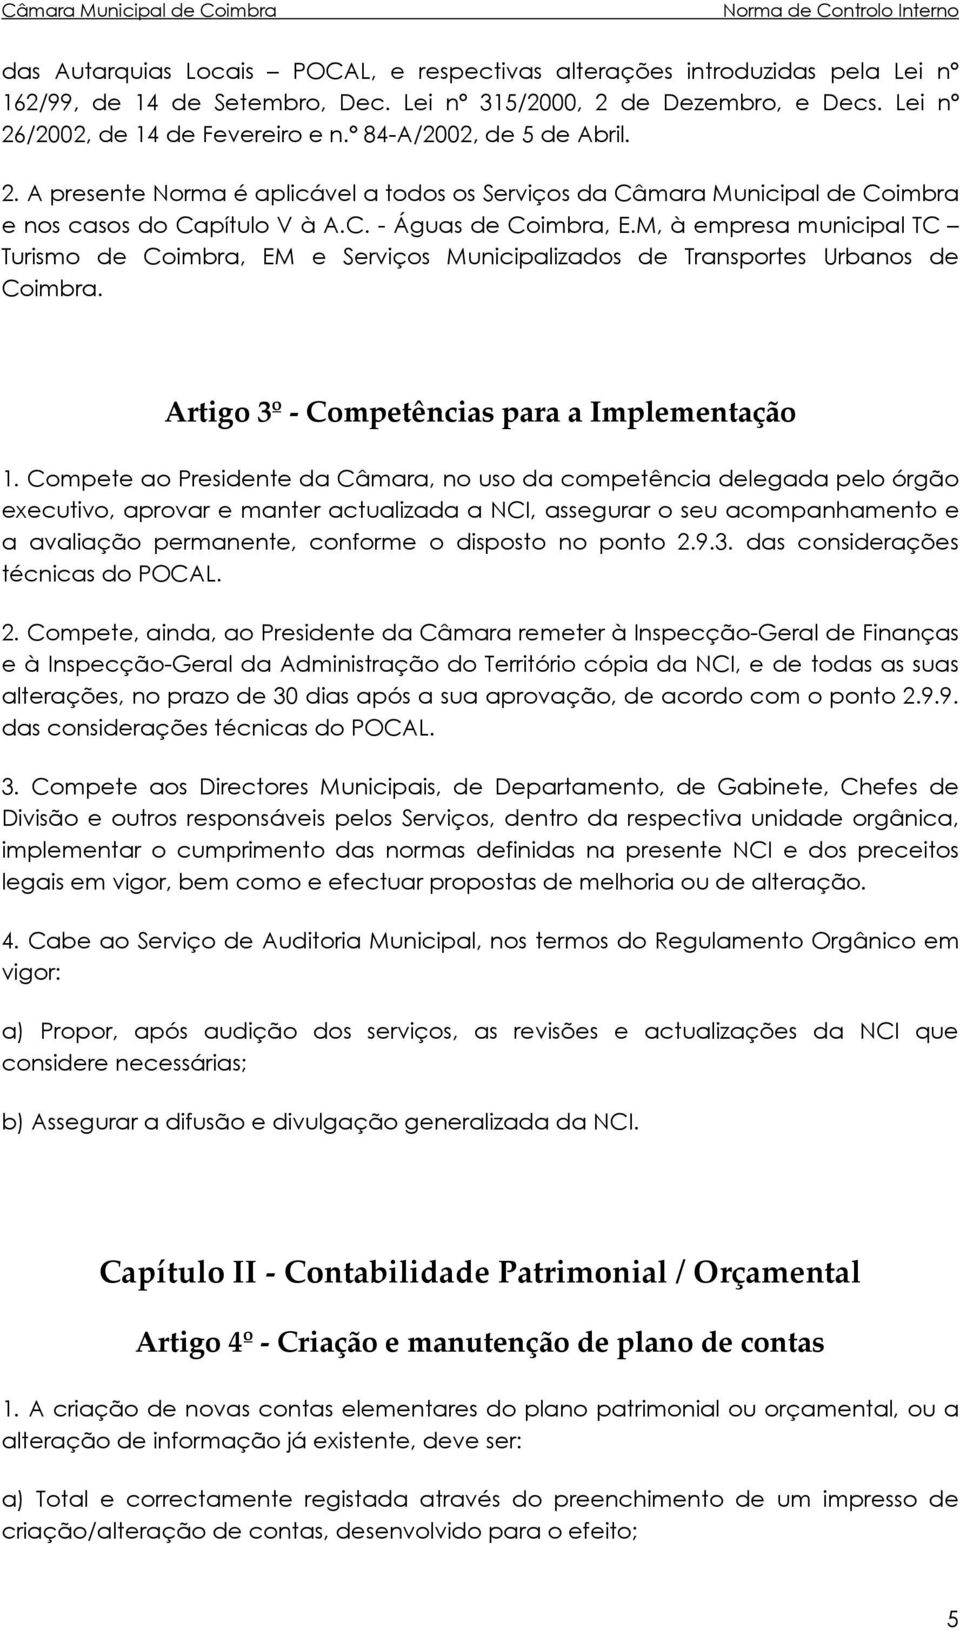 M, à empresa municipal TC Turismo de Coimbra, EM e Serviços Municipalizados de Transportes Urbanos de Coimbra. Artigo 3º - Competências para a Implementação 1.